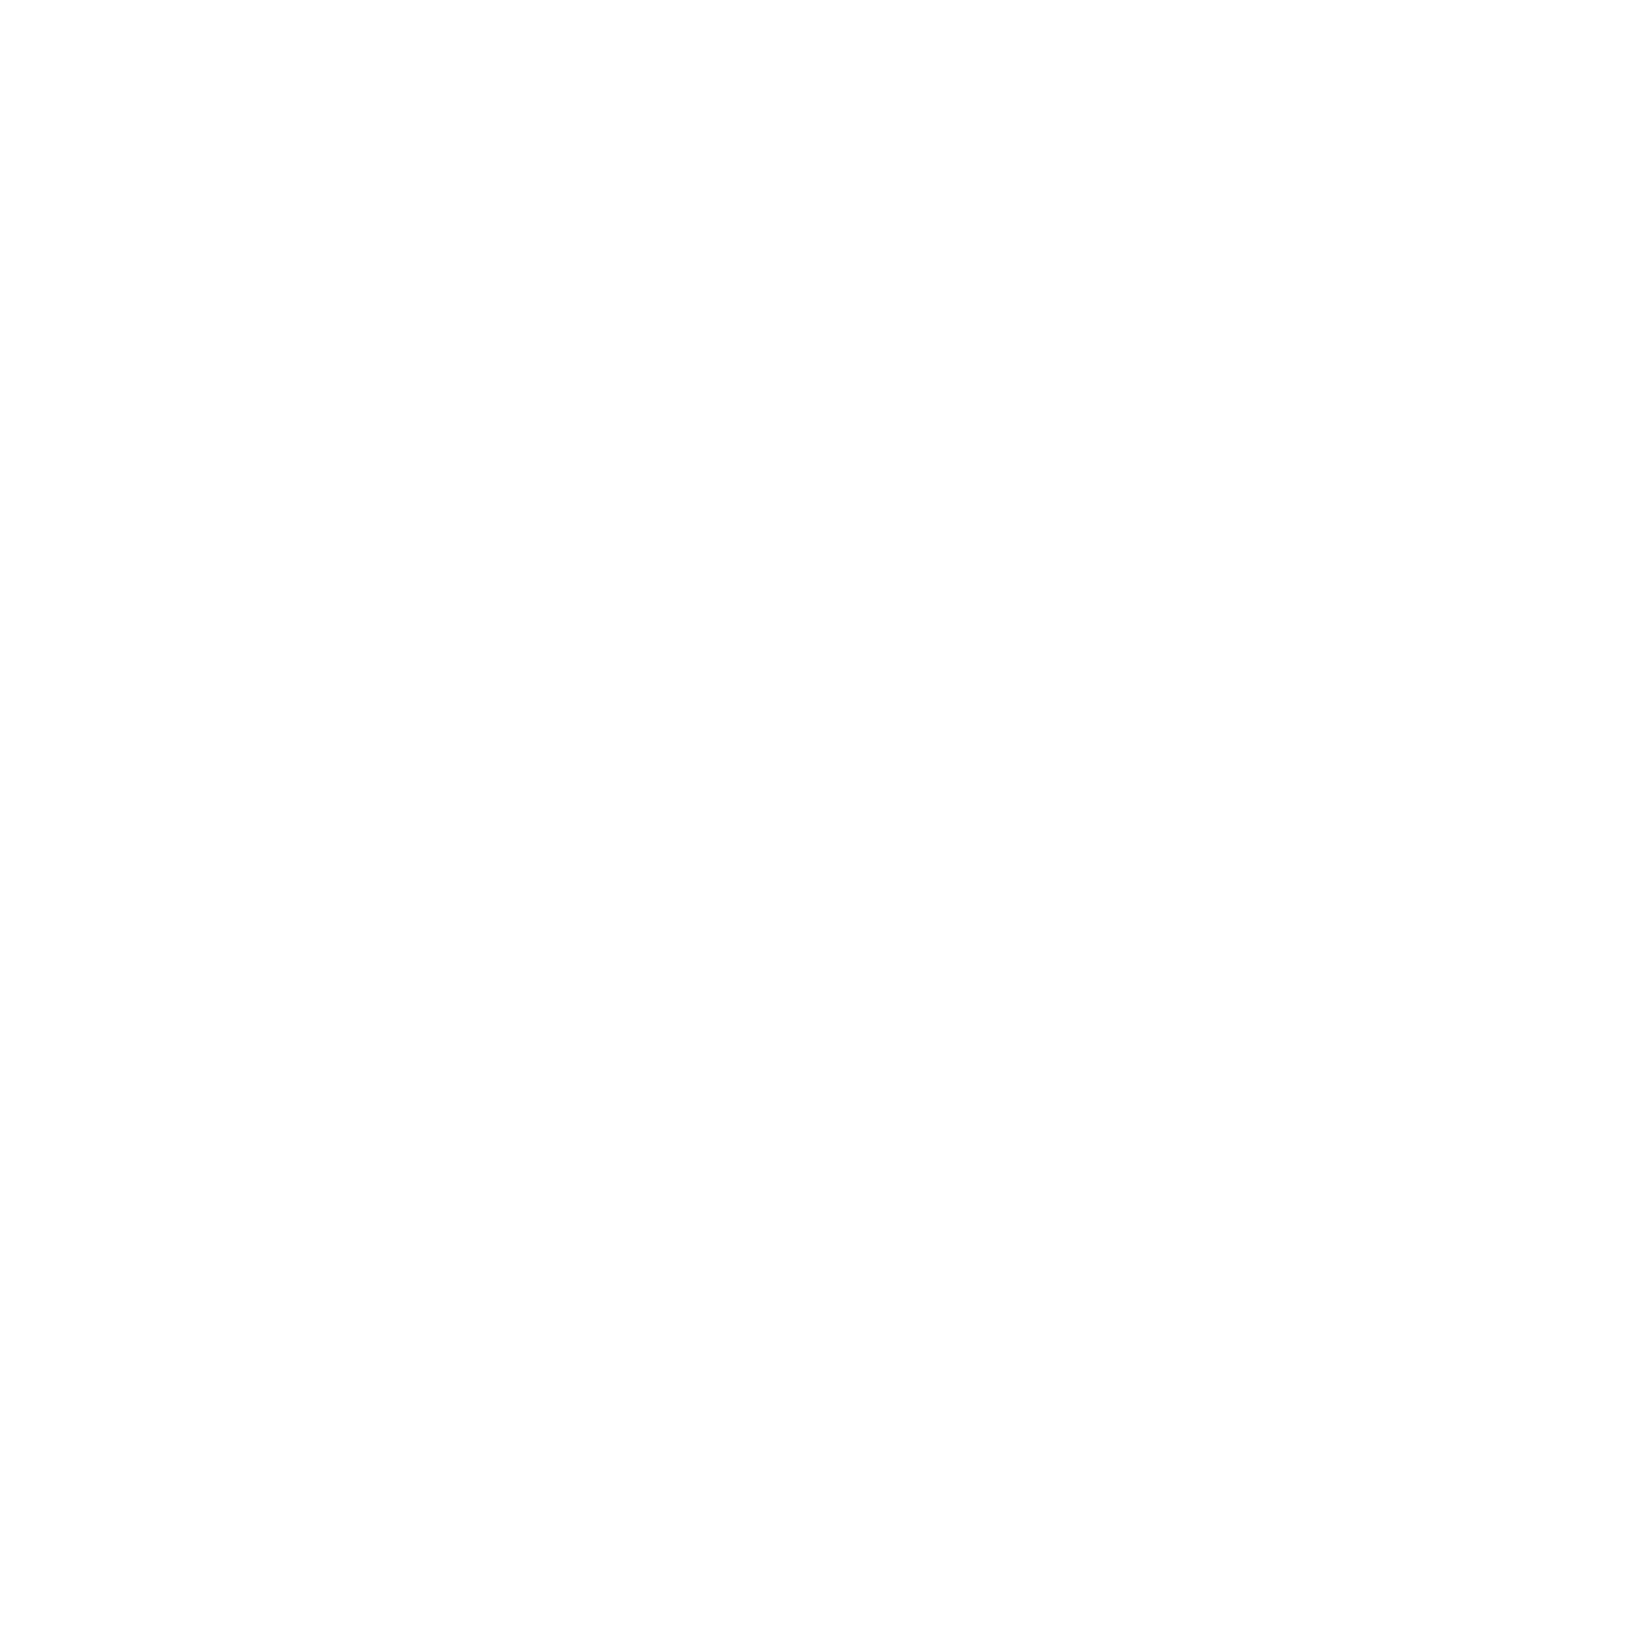 WWNO logo